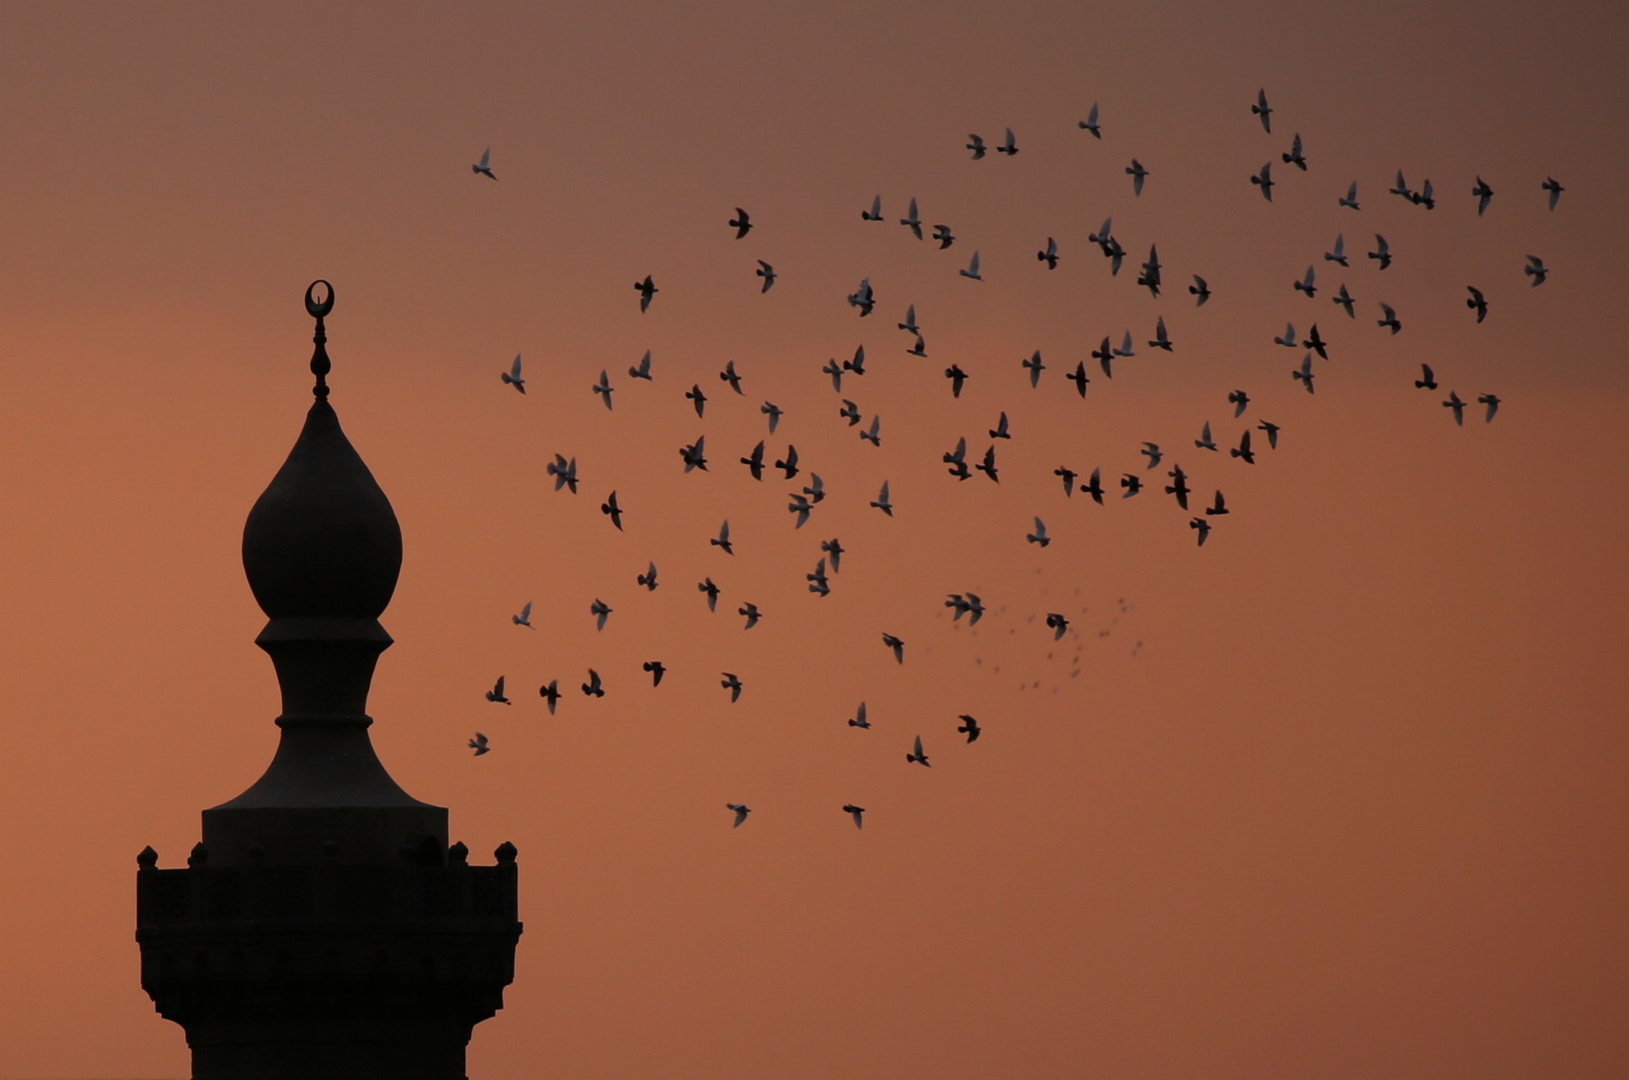 مصر تغلق مسجد الإمام الحسين لأجل غير مسمى وتحيل جميع الأئمة والعاملين فيه للتحقيق